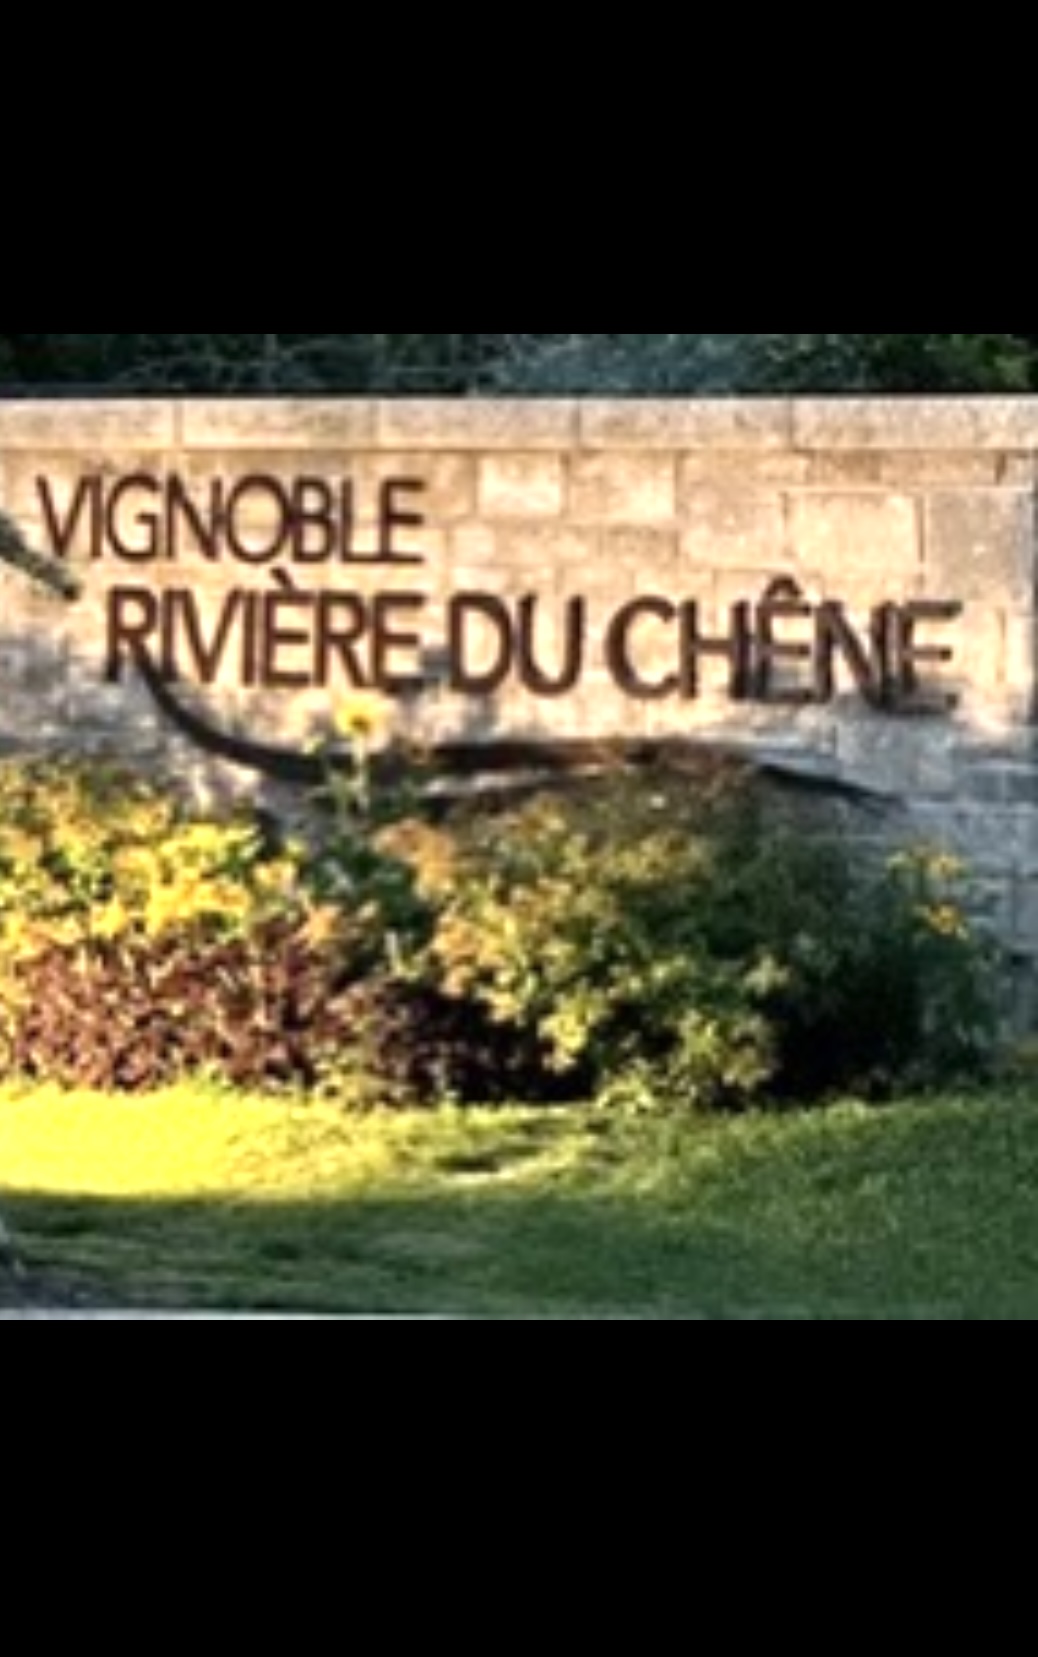 Le vignoble Rivière du Chêne... 25 ans de réussite avec une pancarte.